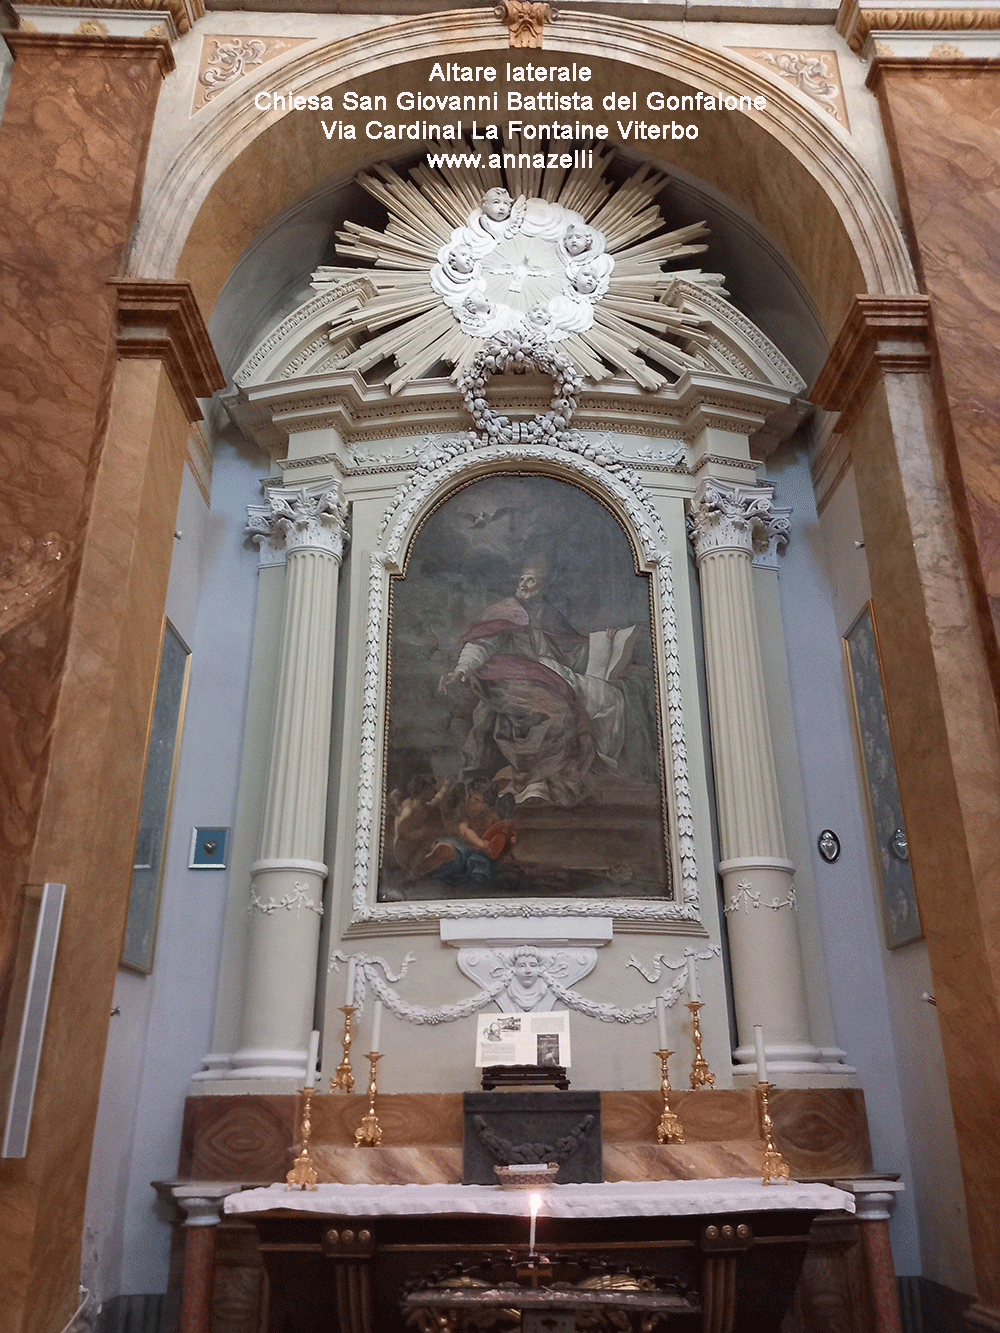 altare laterale chiesa san giovanni del gonfalone viterbo via cardinal la fantaine info e foto anna zelli